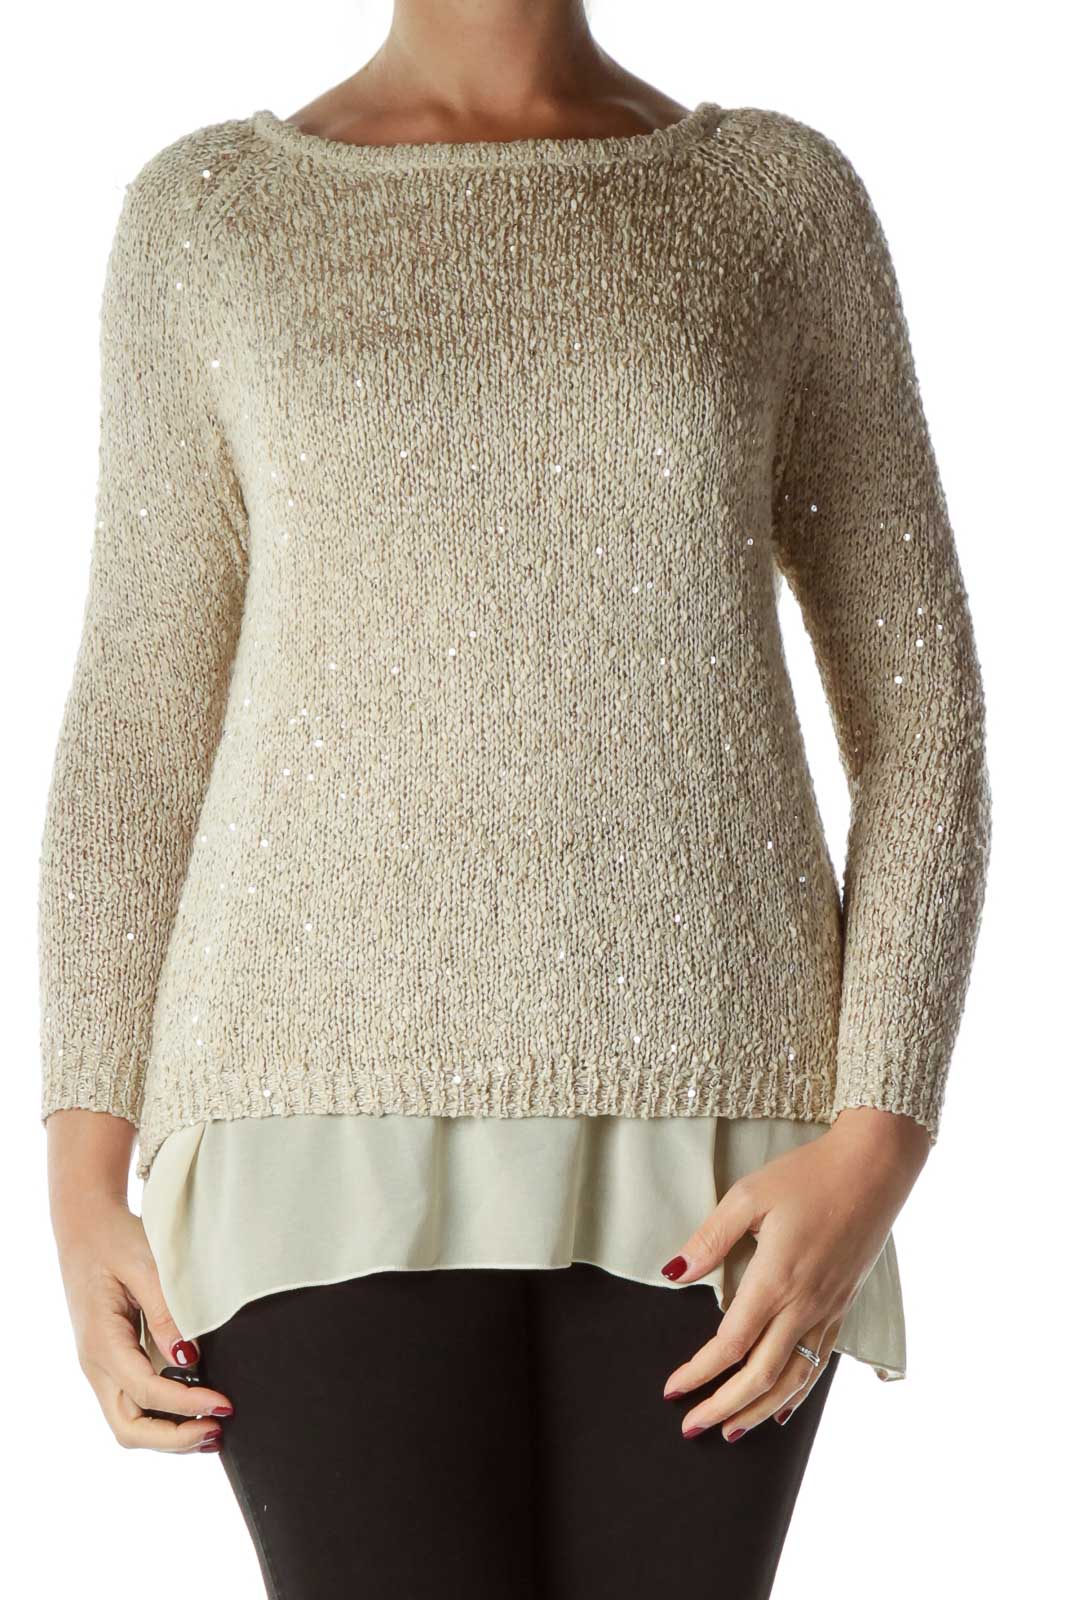 Beige Sequin Sweater Front